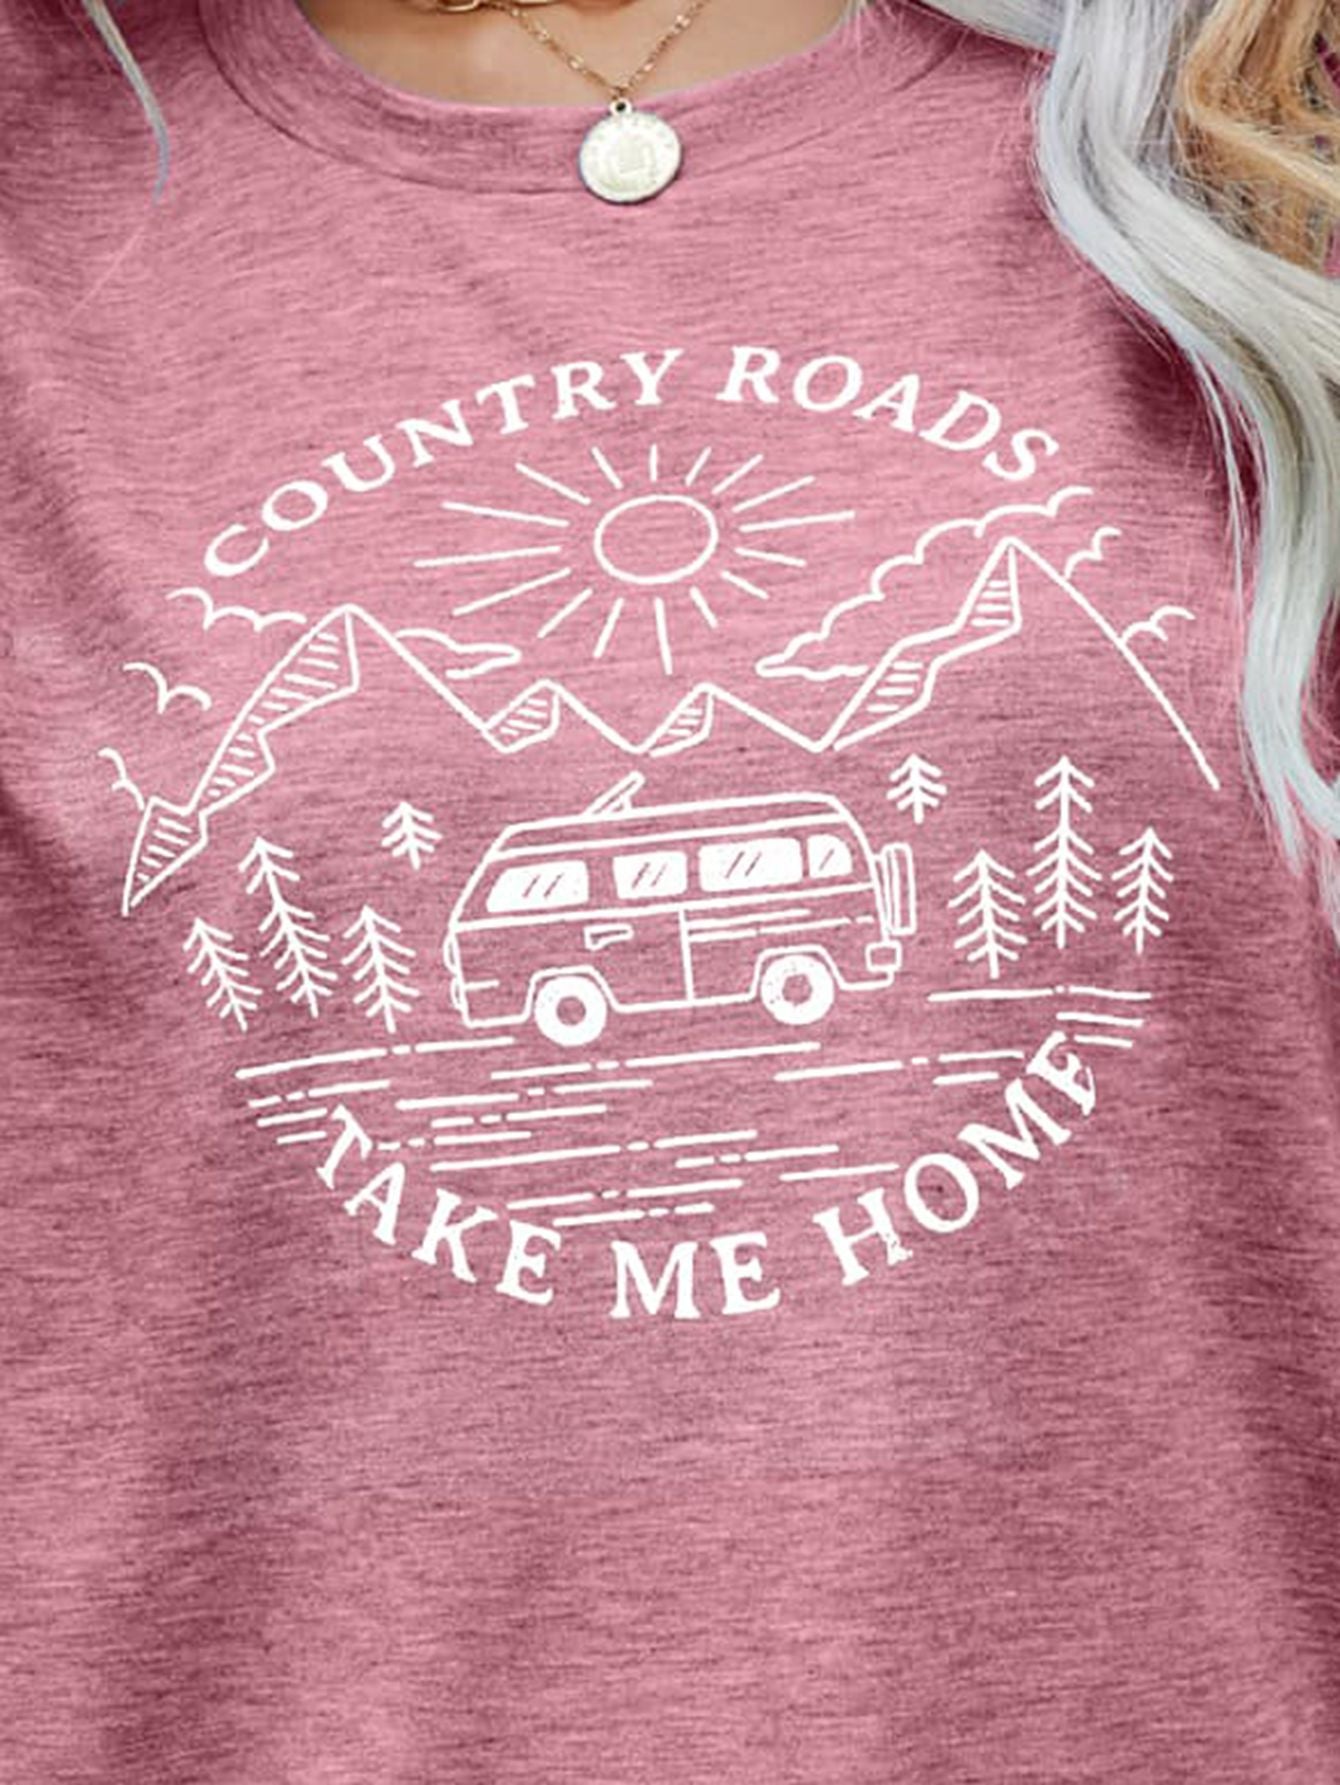 Take Me Home T-shirt